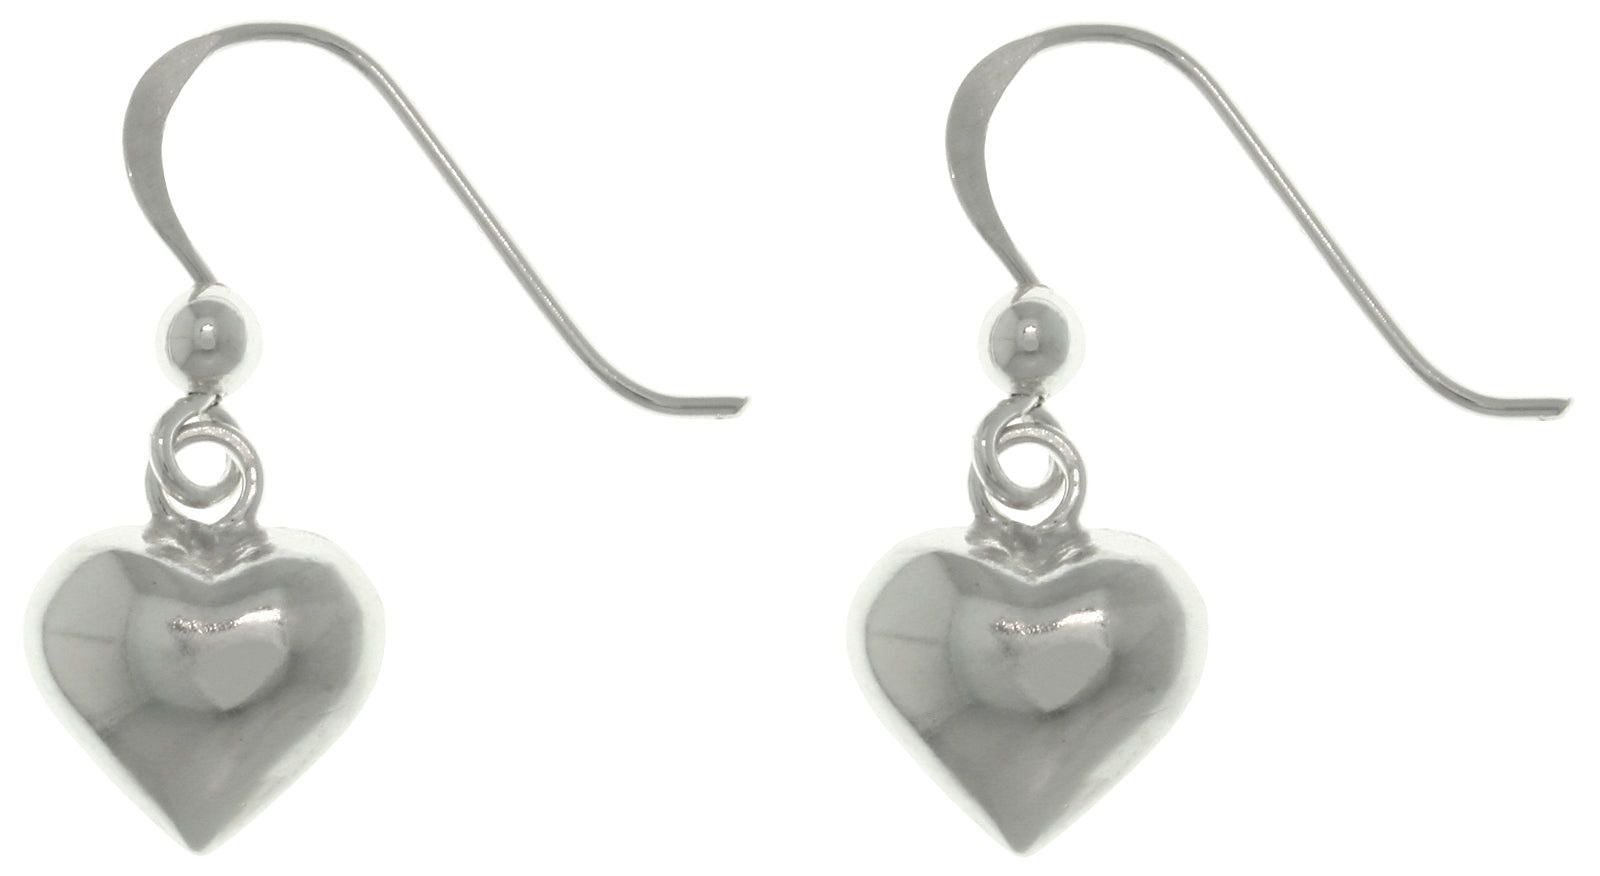 Jewelry Trends Sterling Silver Petite Puff Heart Dangle Earrings